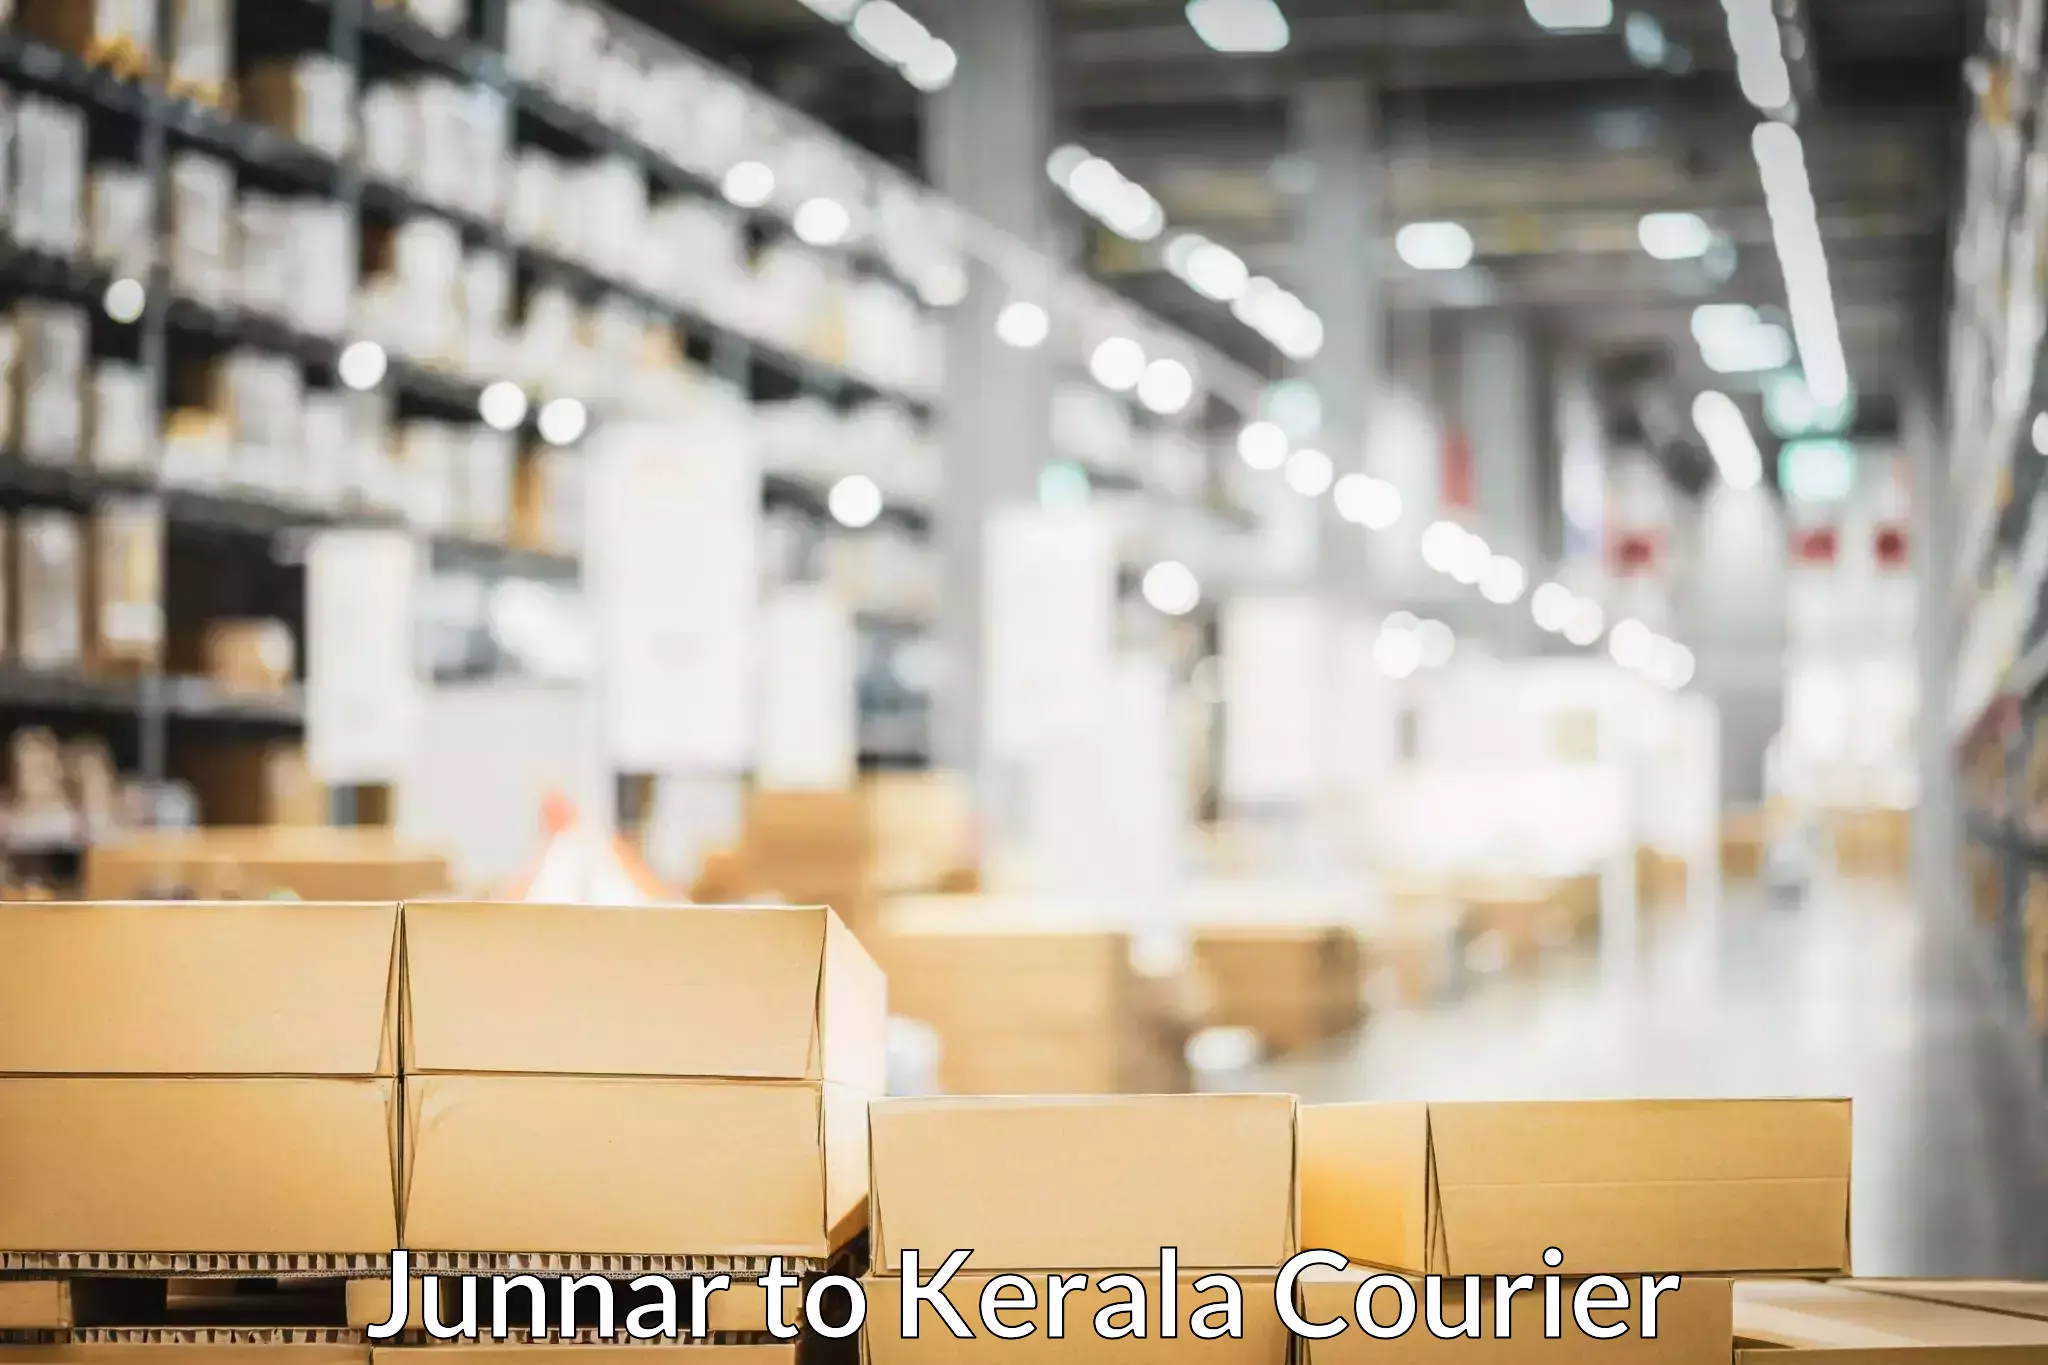 Moving and packing experts Junnar to Karunagappally